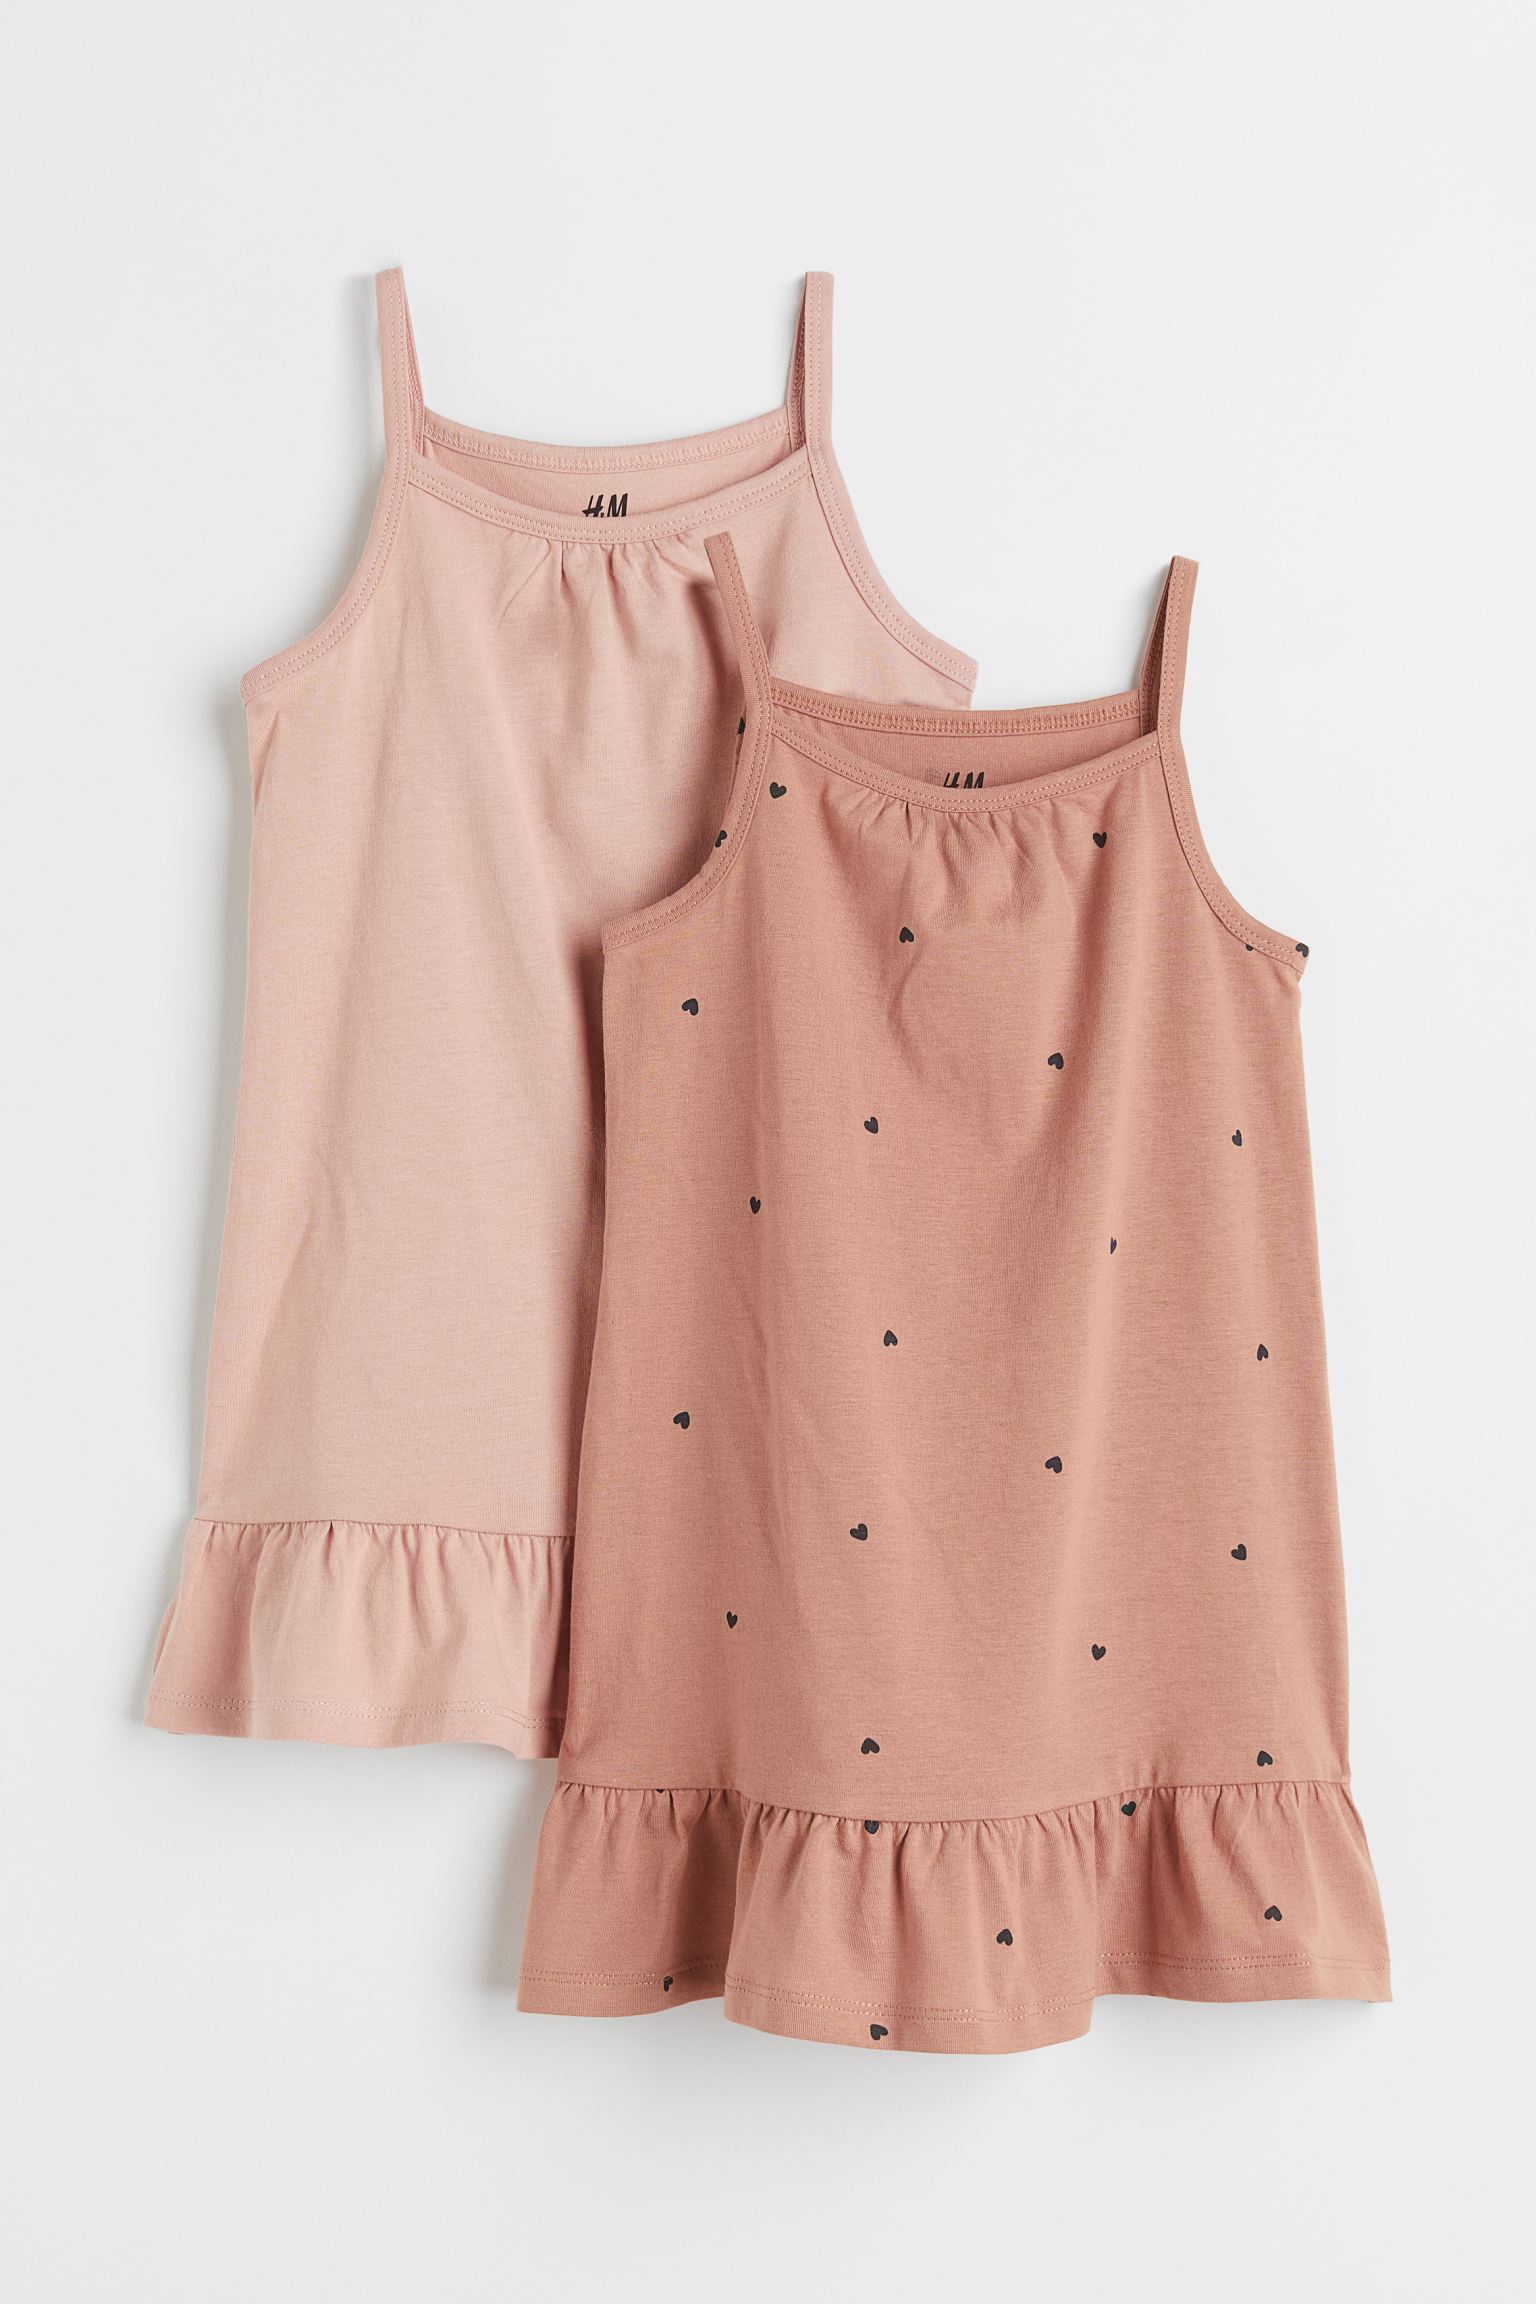 Комплект платьев H&M для девочек, розовый, бежевый-003, размер 110/116, 984173003, 2 шт.